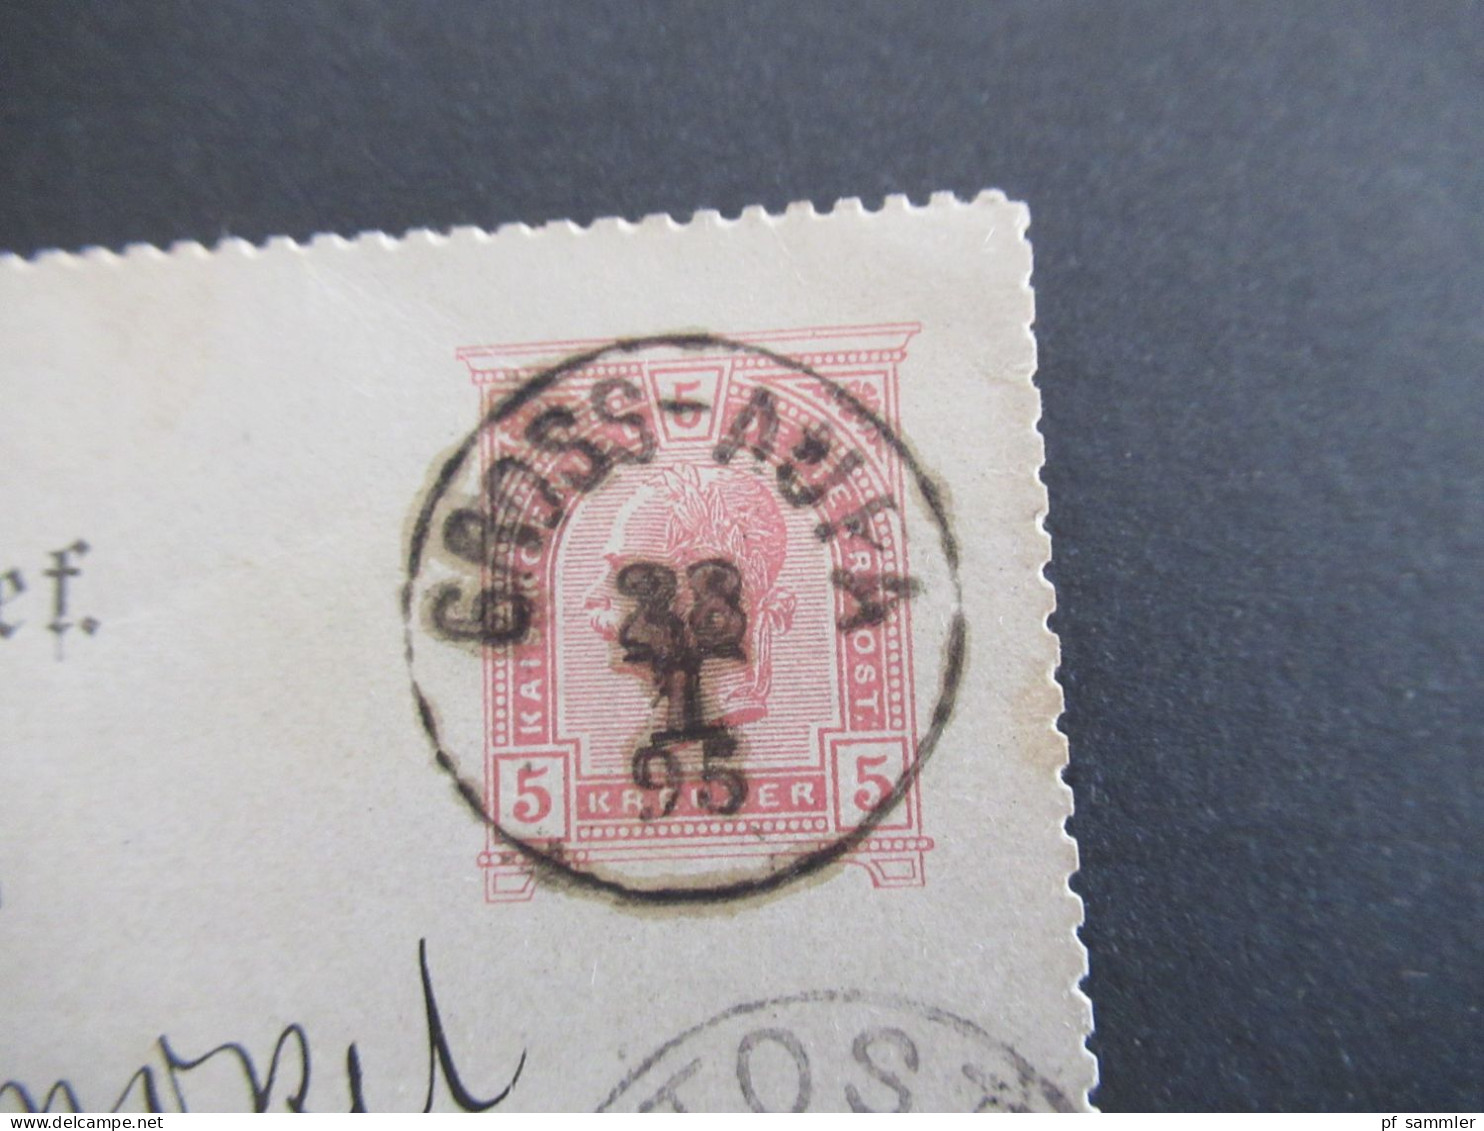 1895 Österreich / Tschechien Riesengebirge Kartenbrief K1 Gross Aupa (bei Trautenau) Und Ank. Stempel K1 Tost Schlesien - Postkarten